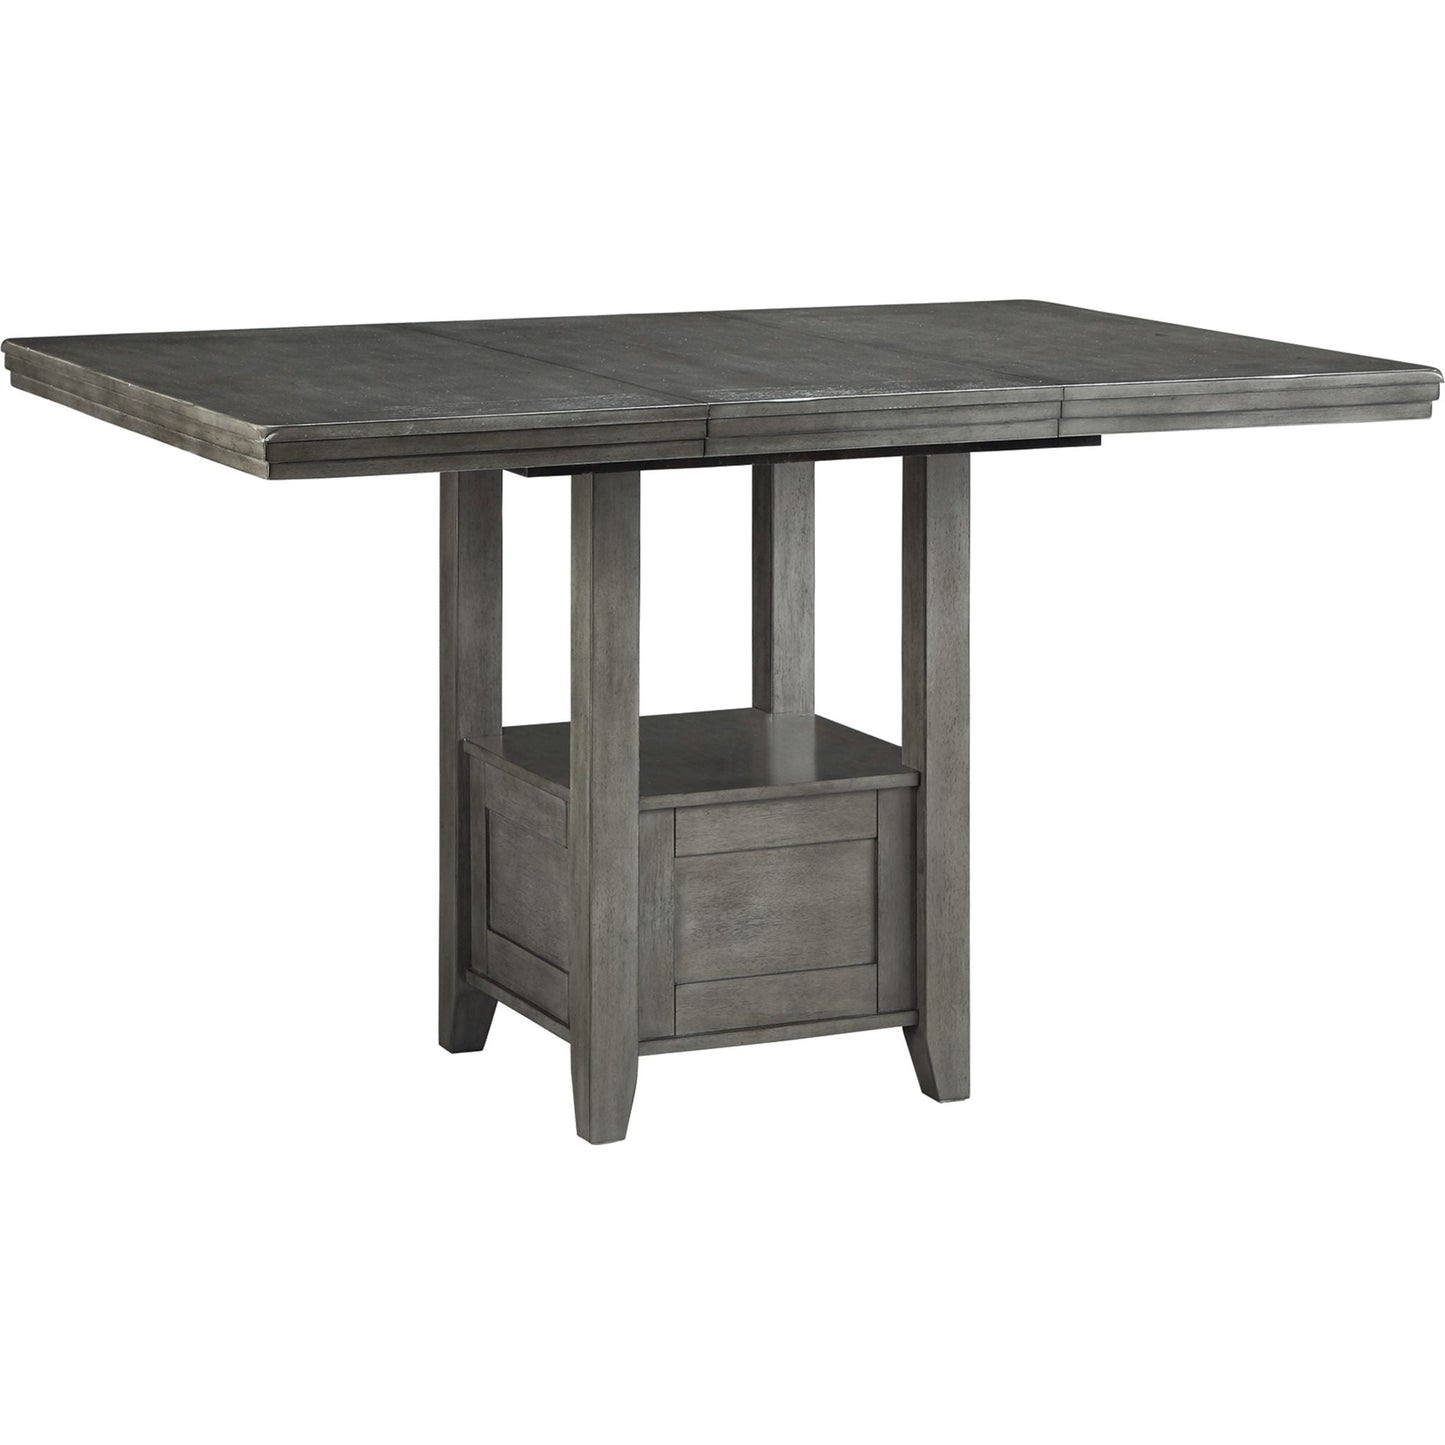 Hallanden Counter Table - Gray - (D589-42)